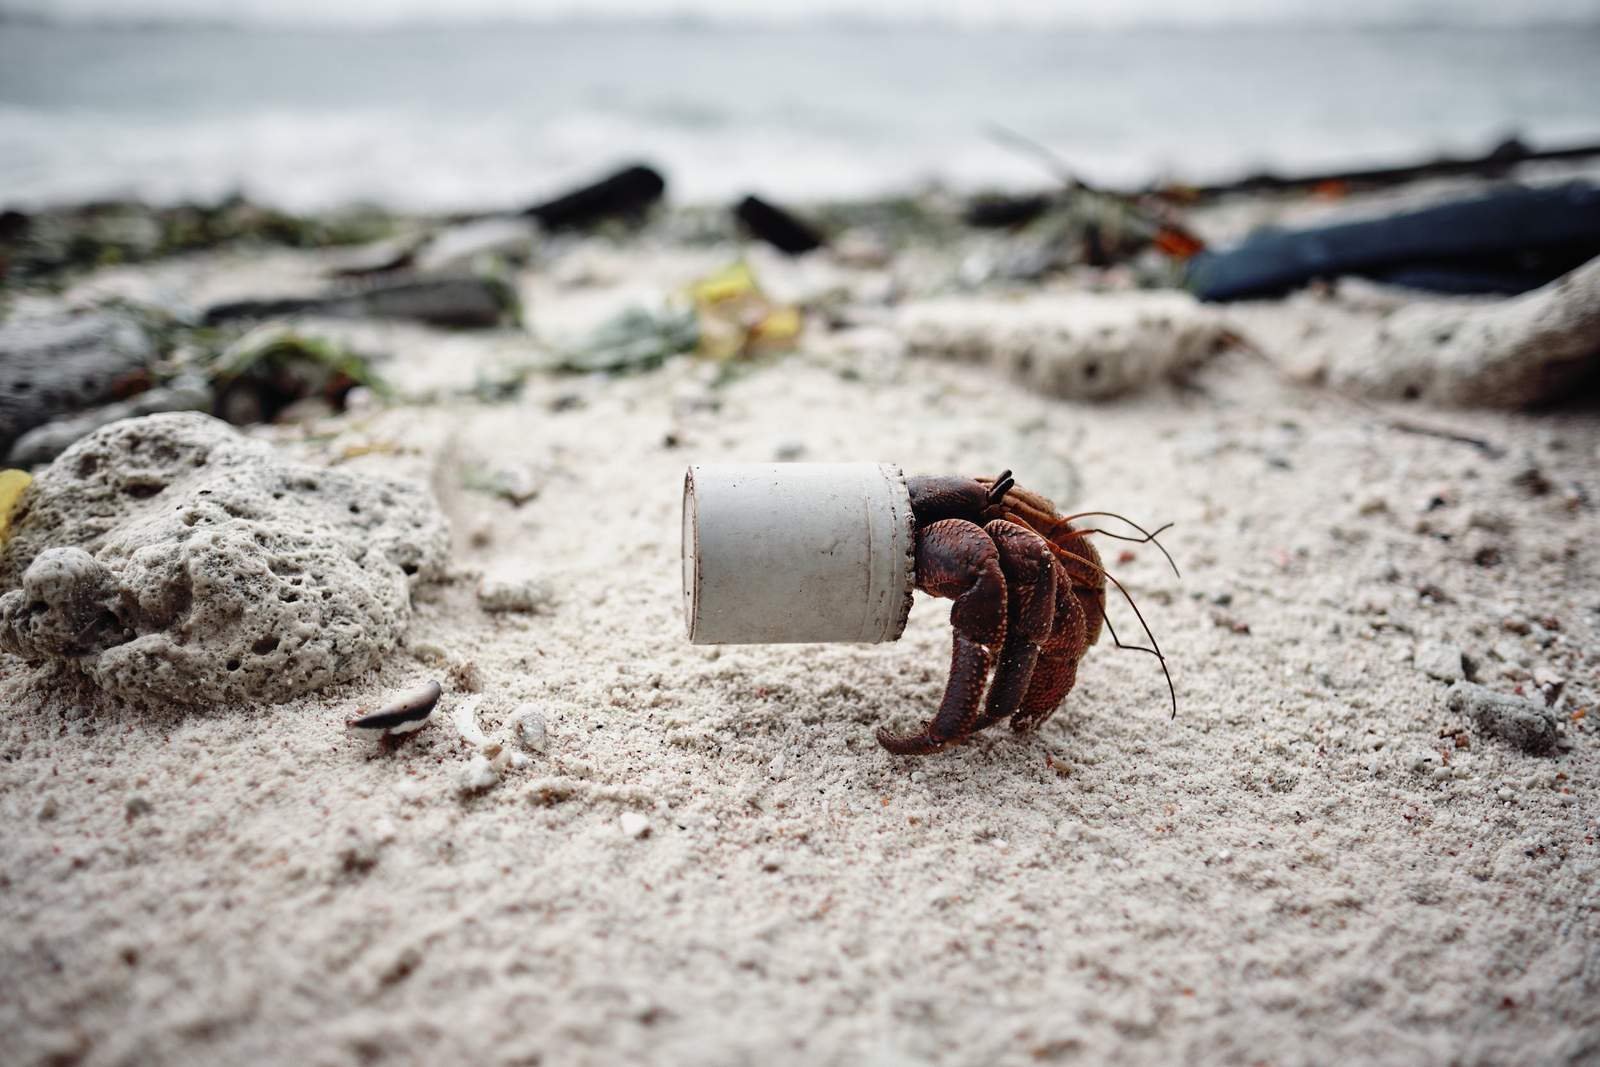 Photographe Matthew Sharp photo déchet maldives plage océans pollution